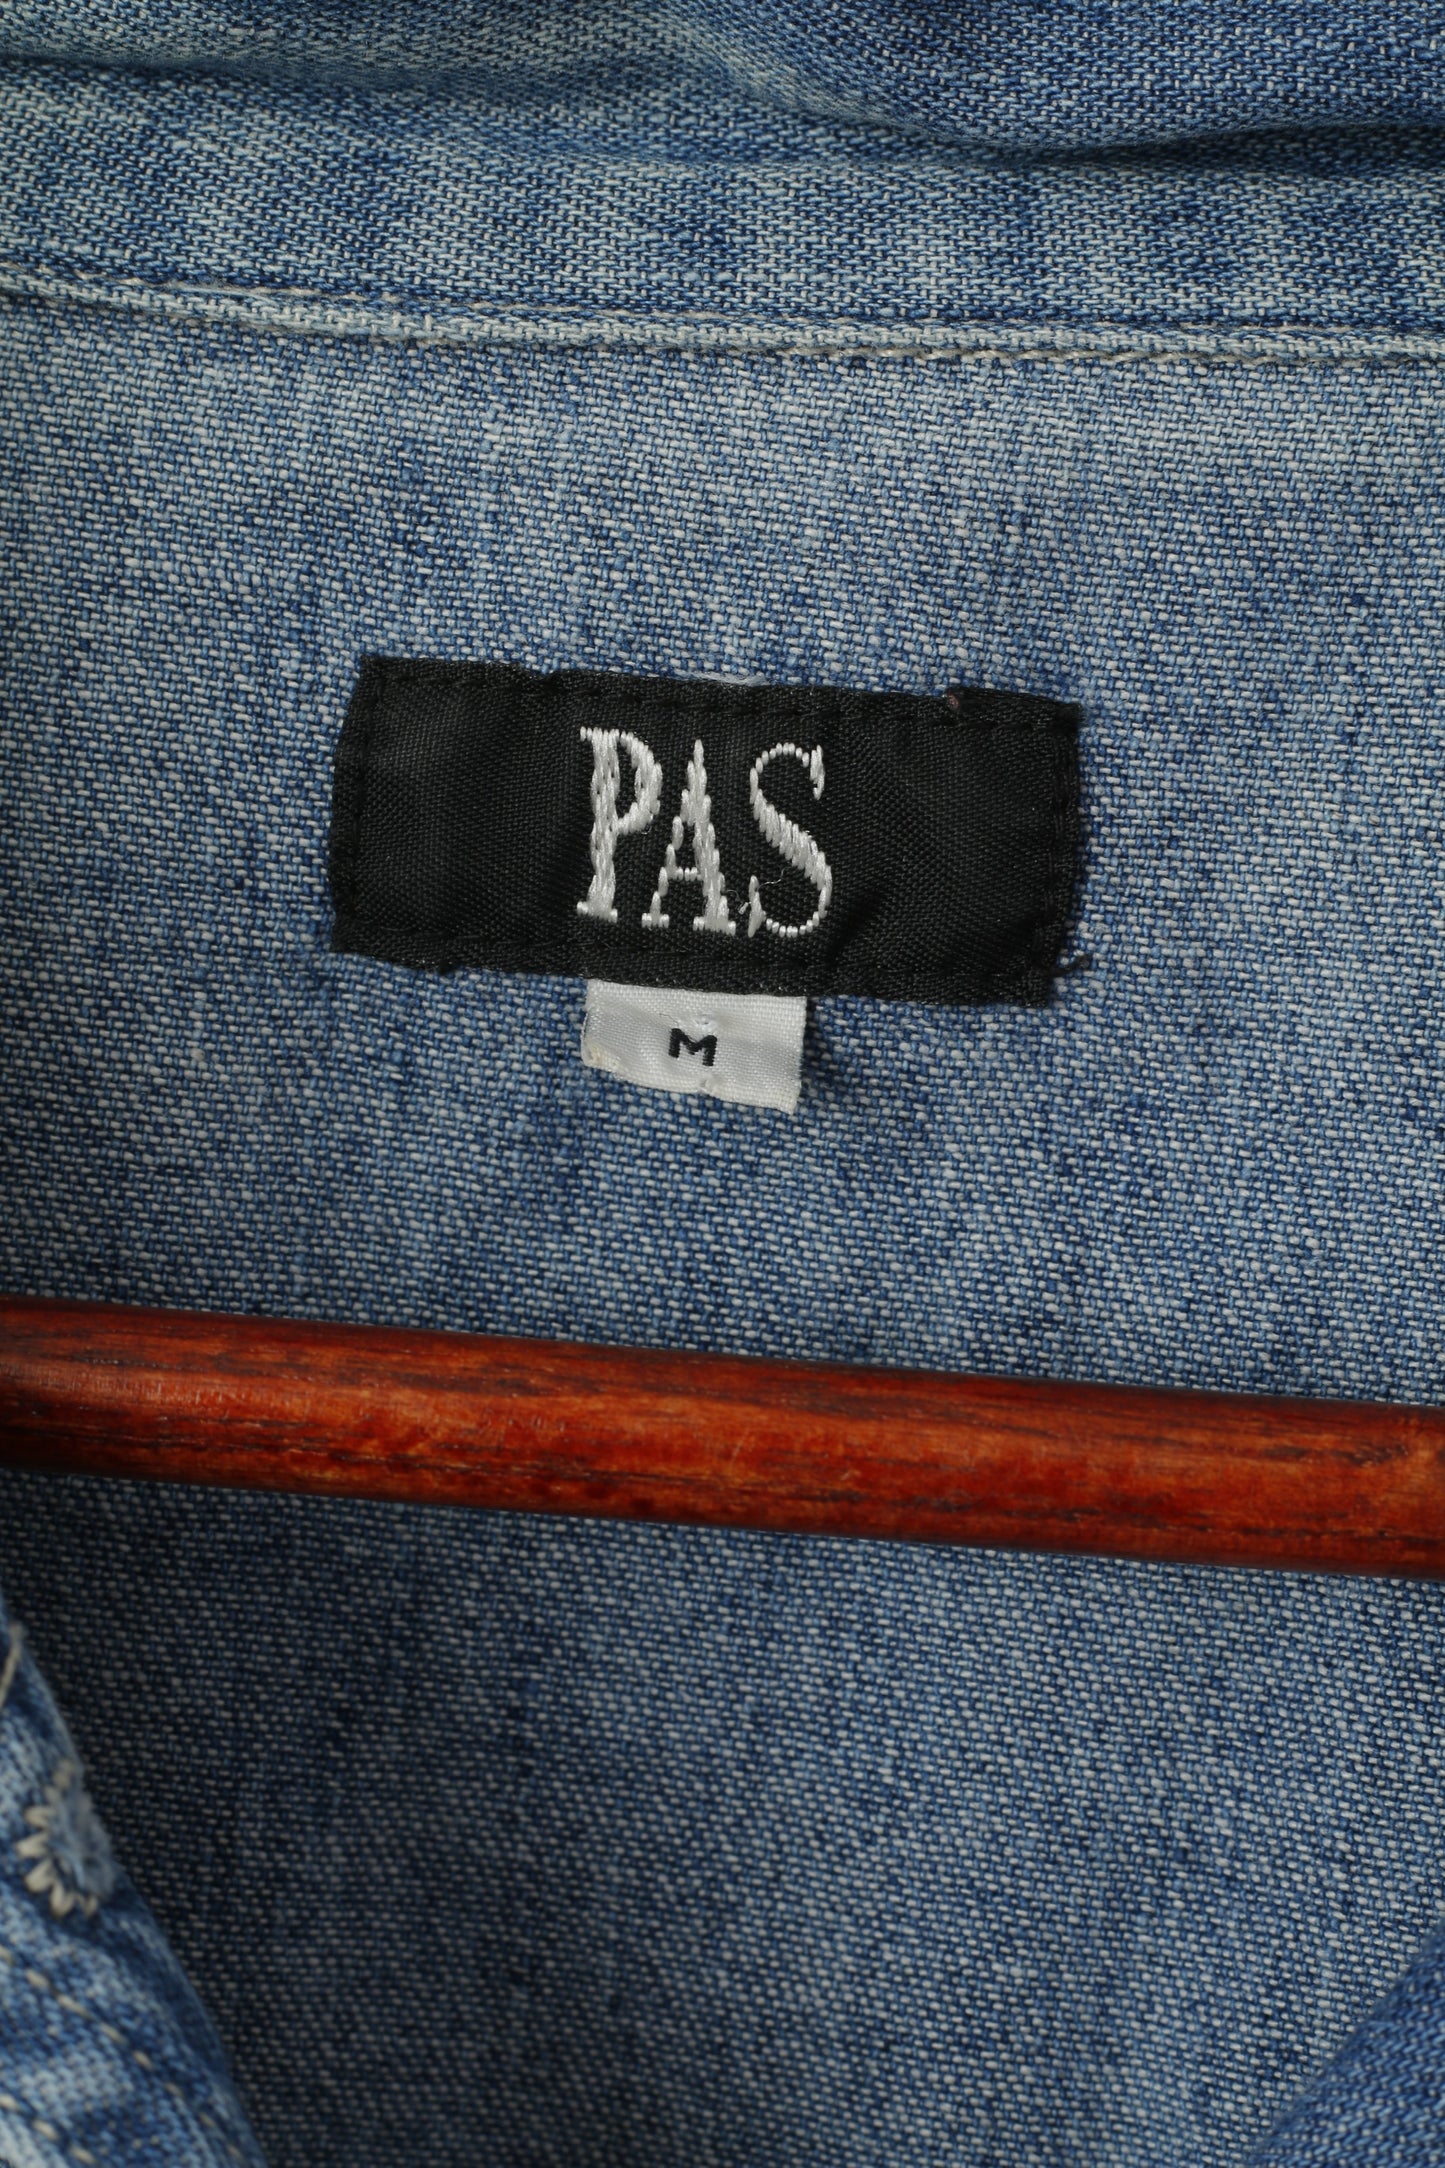 PAS Femmes M Denim Blazer Bleu Jeans Denim Vintage Coton Veste Top